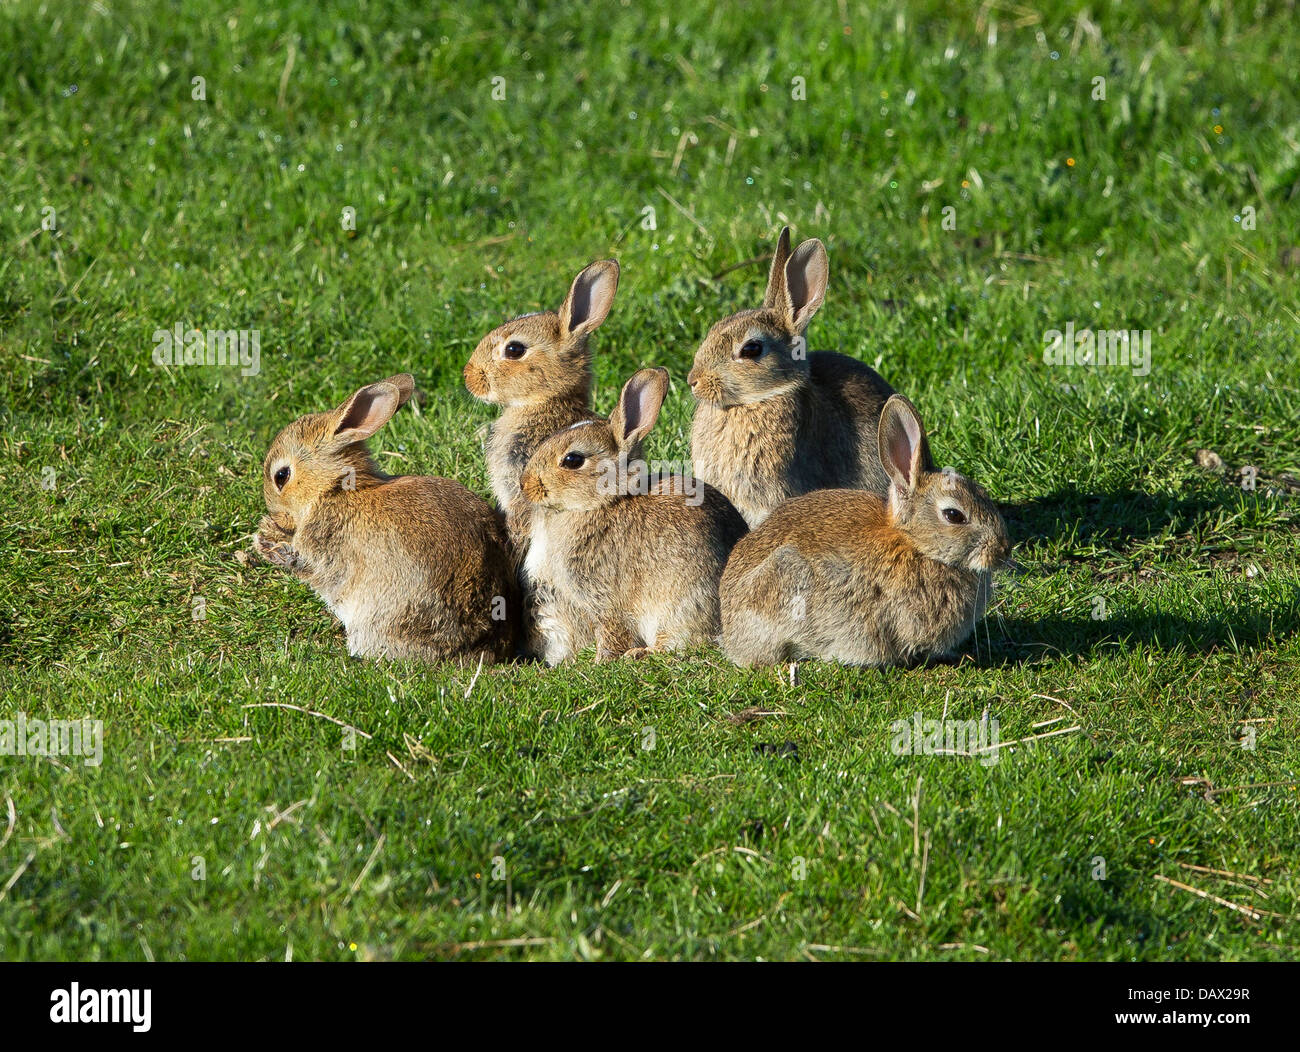 Crías de conejos fotografías e imágenes de alta resolución - Alamy